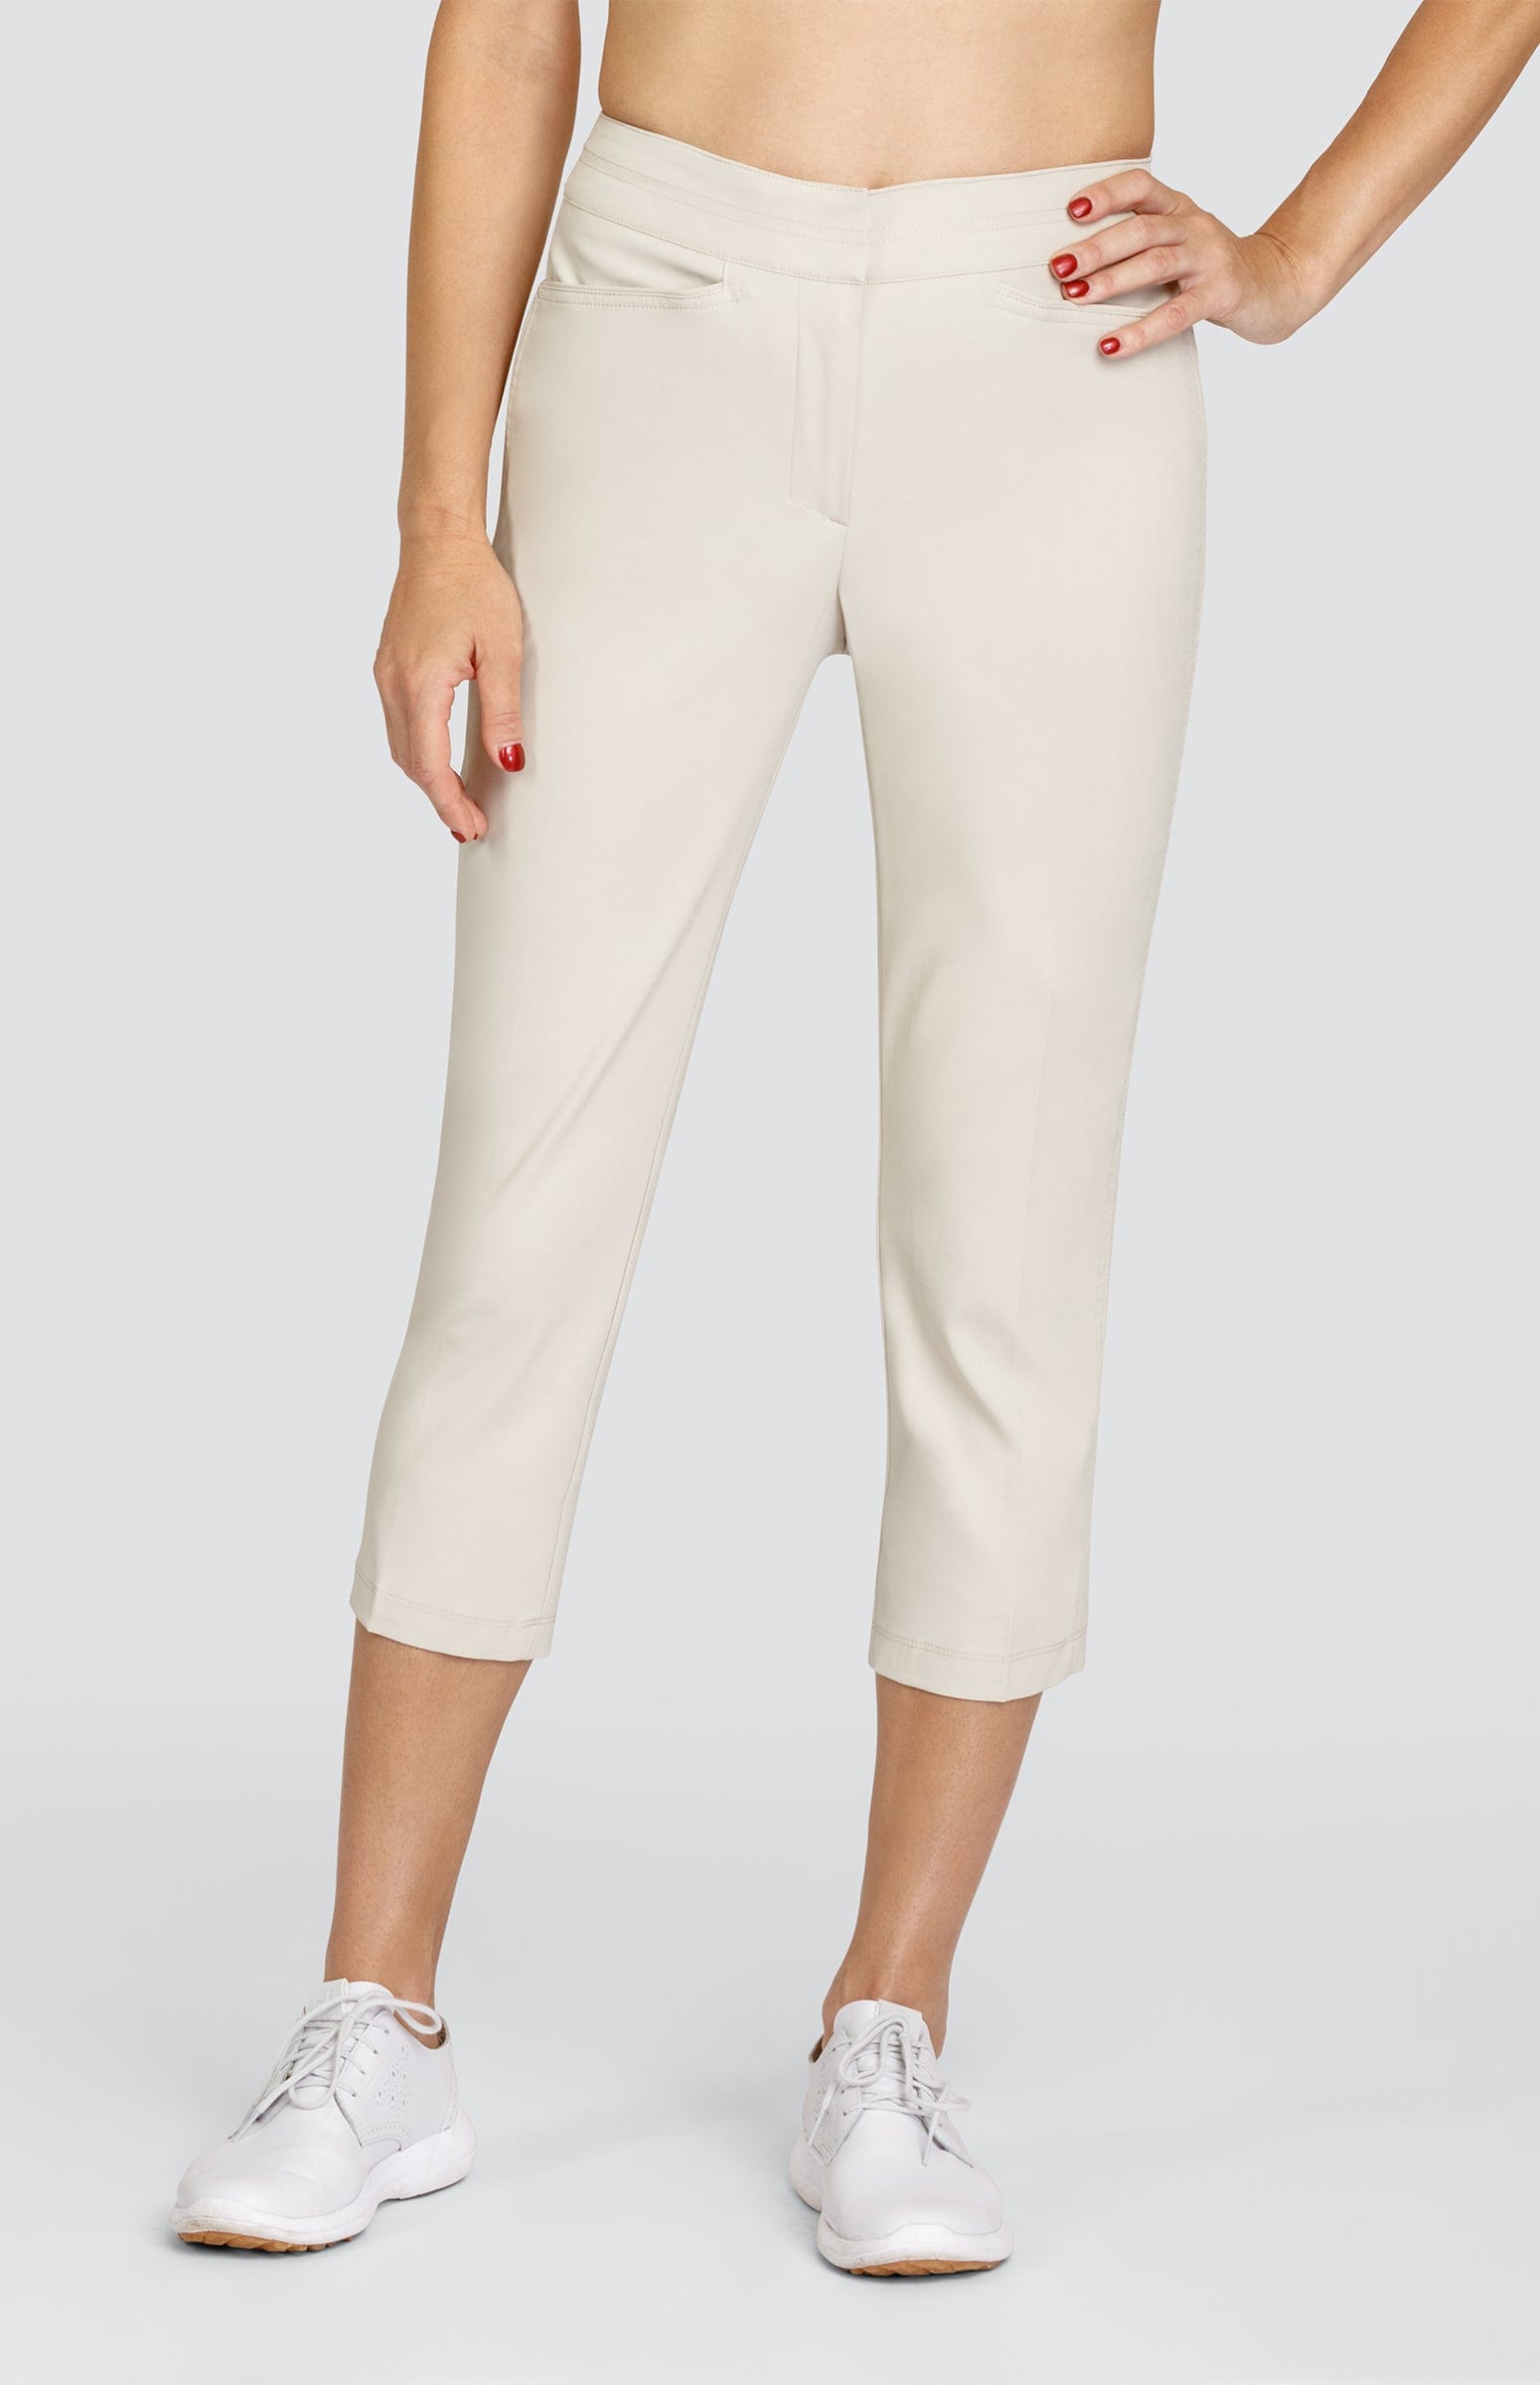 Women's Beige Cropped & Capri Pants